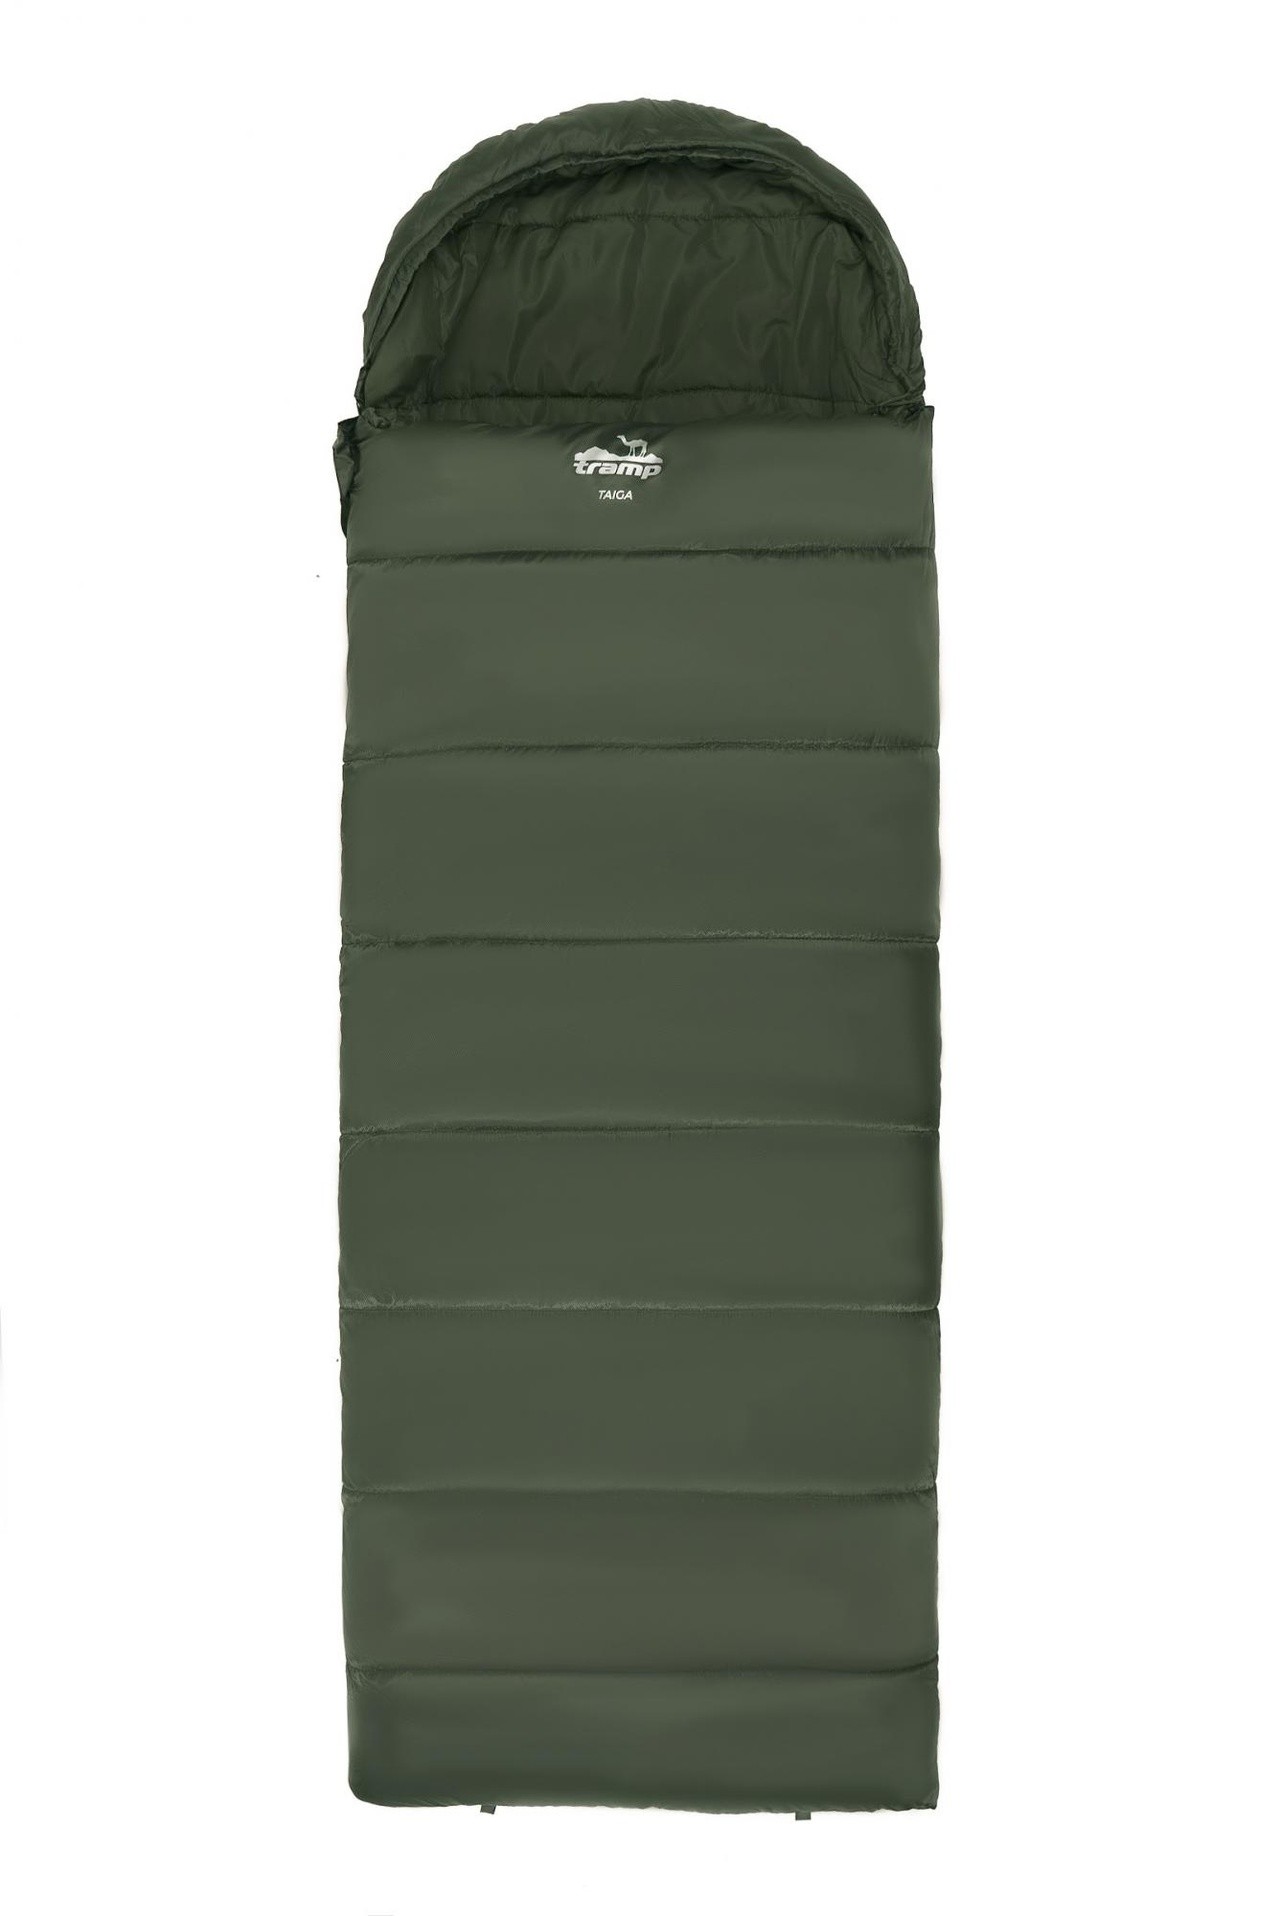 Спальный мешок одеяло Tramp Taiga 400XL 220*100 см (-10°C) - фото